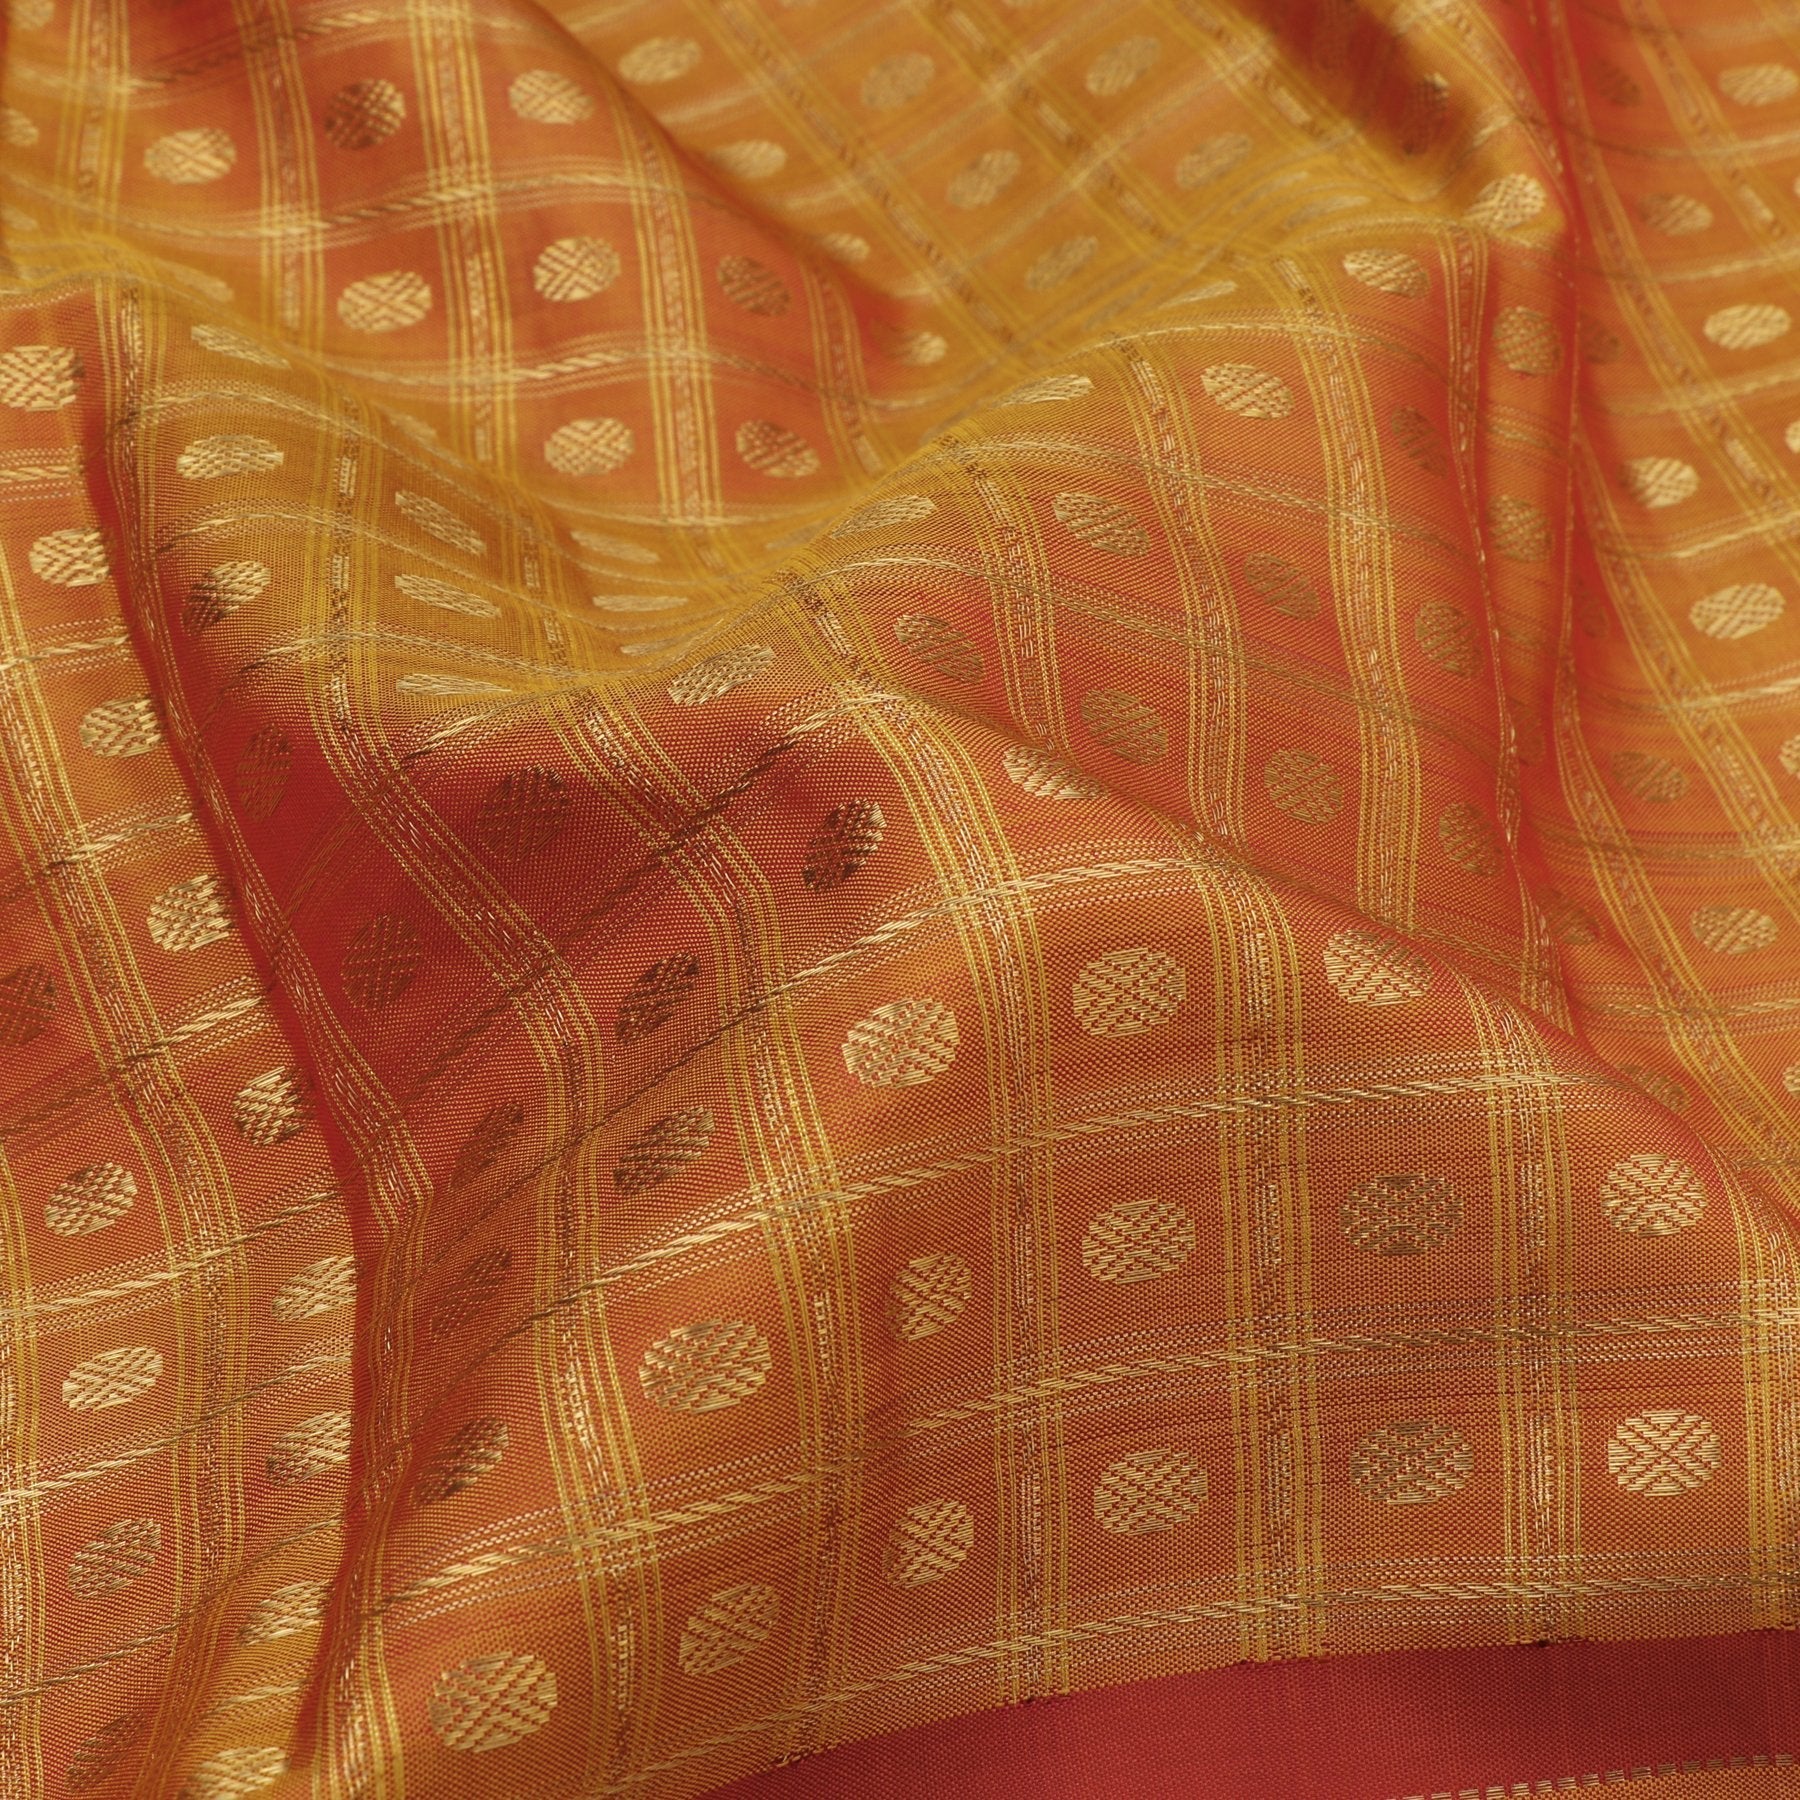 Kanakavalli Kanjivaram Silk Sari 20-040-HS001-01298 - Fabric View